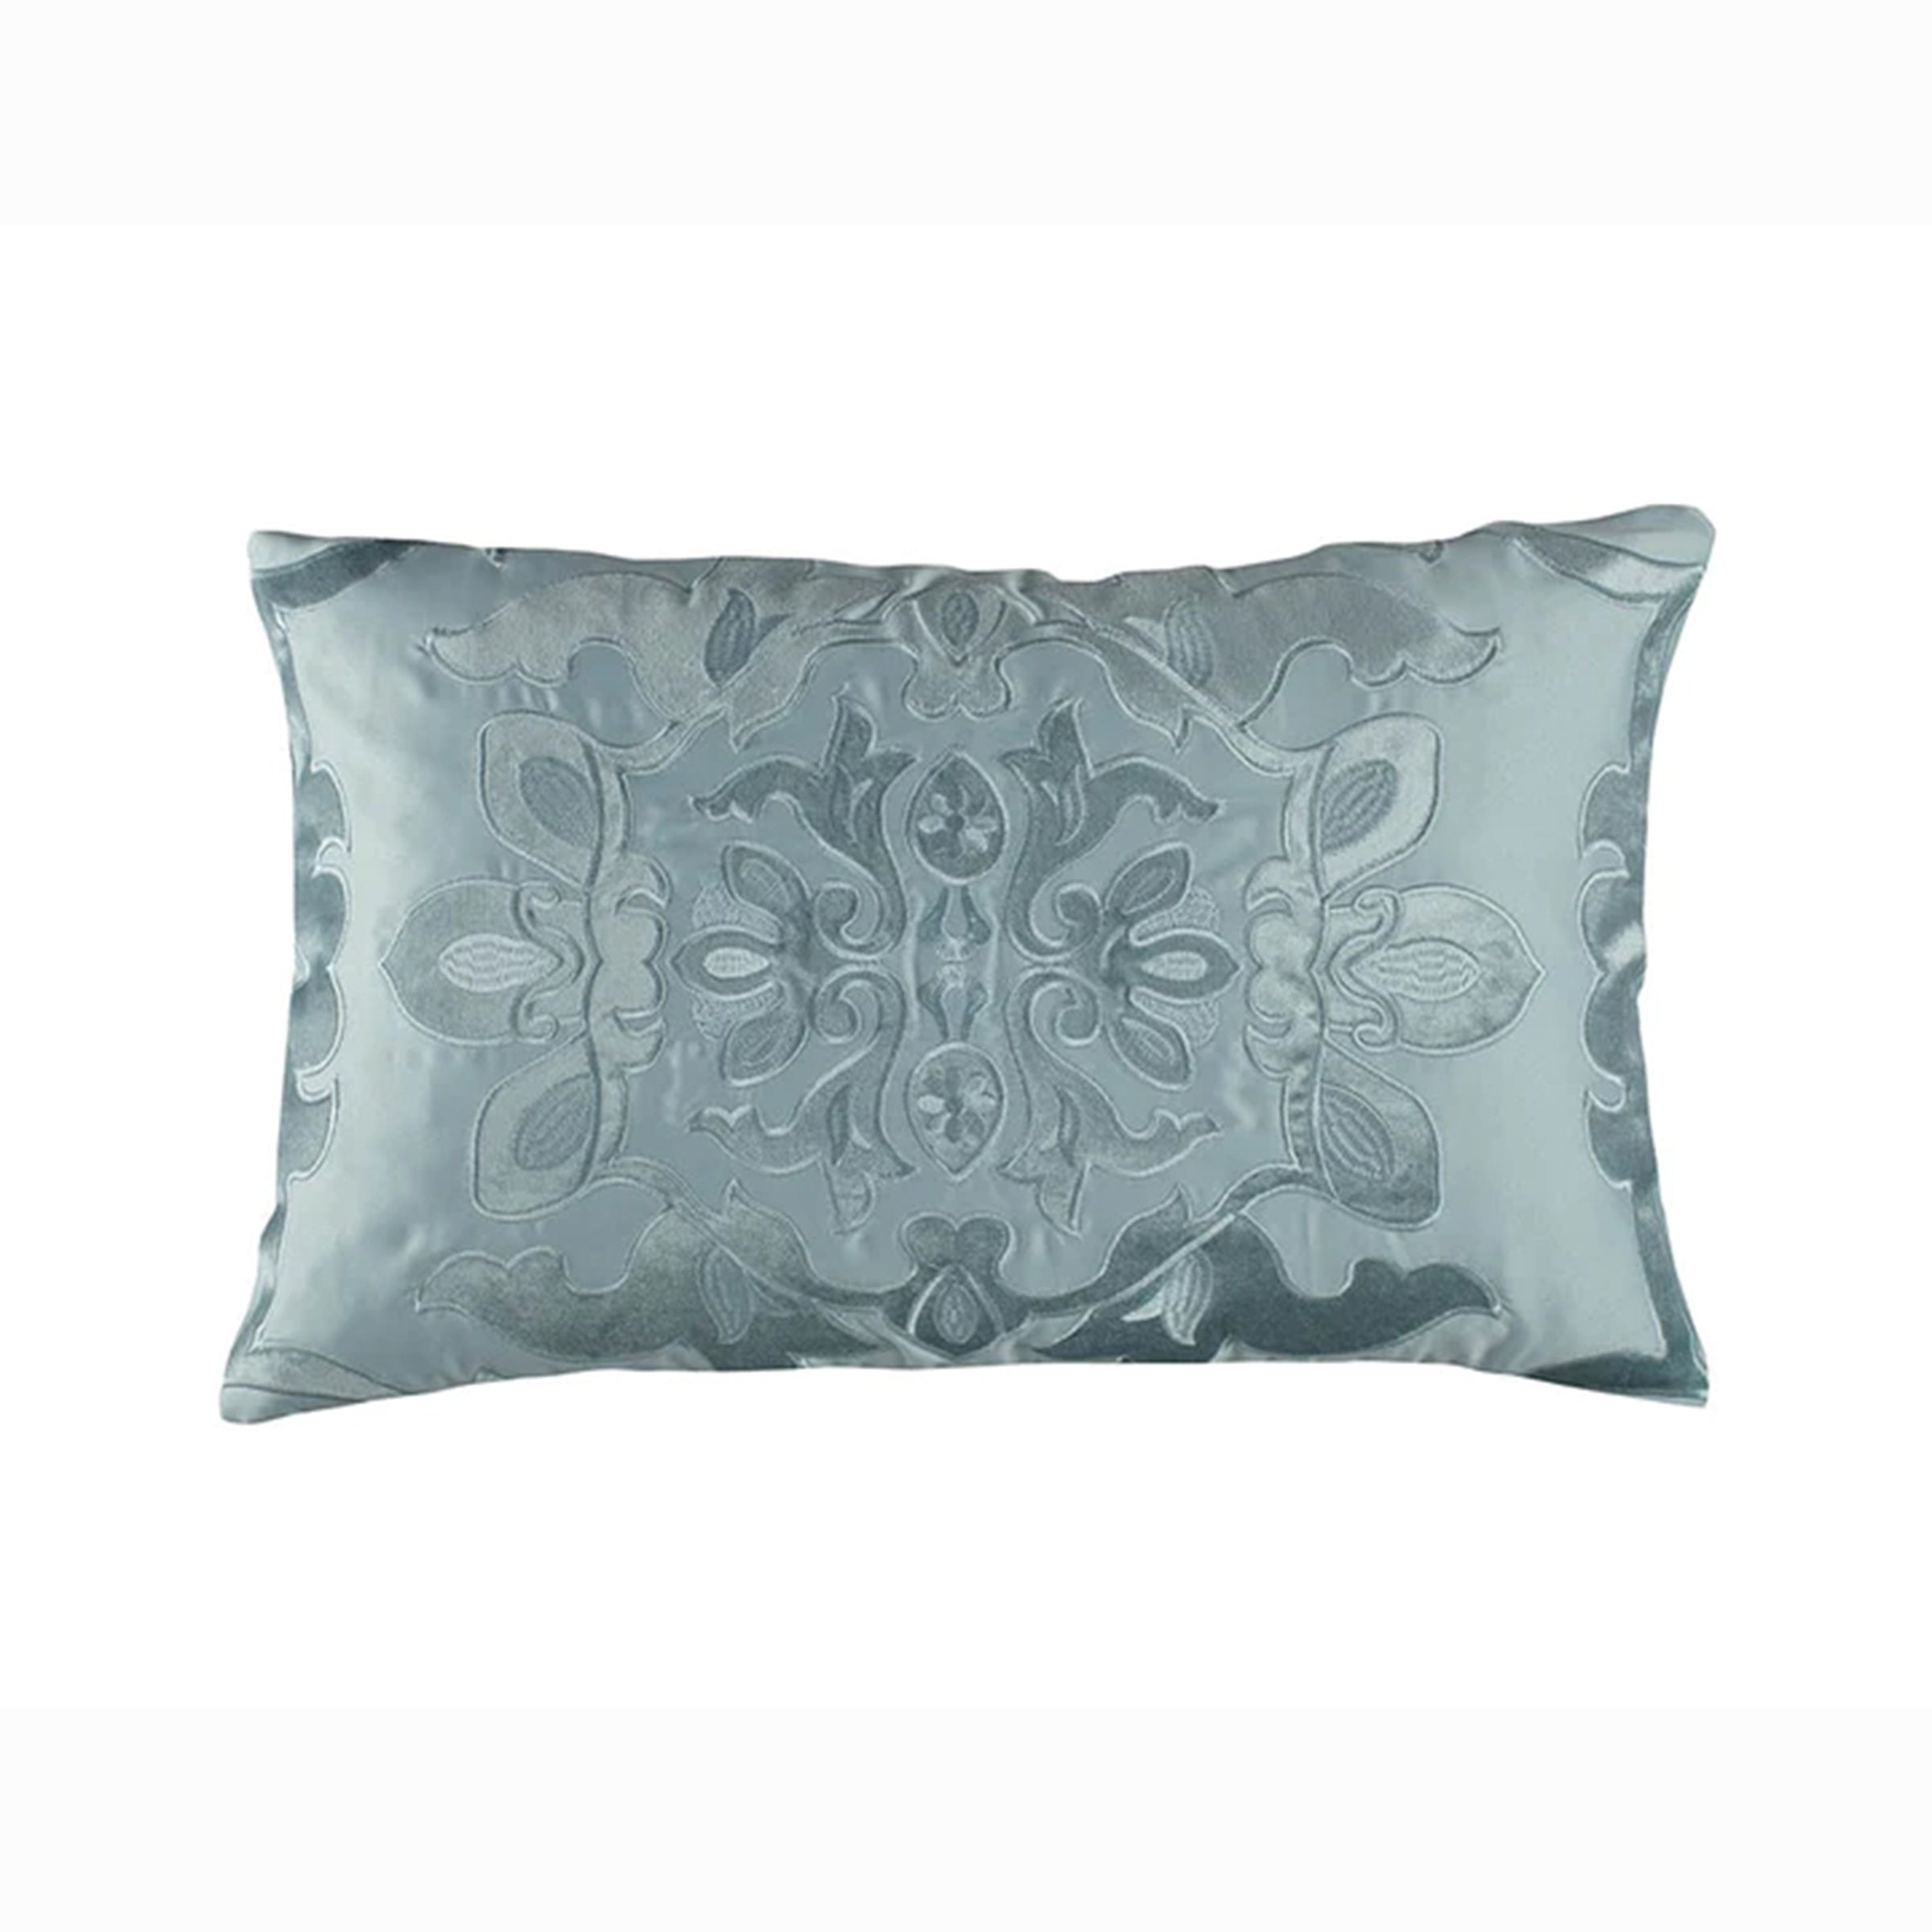 Lili Alessandra Morocco Small Rectangle Pillow - Sea Foam